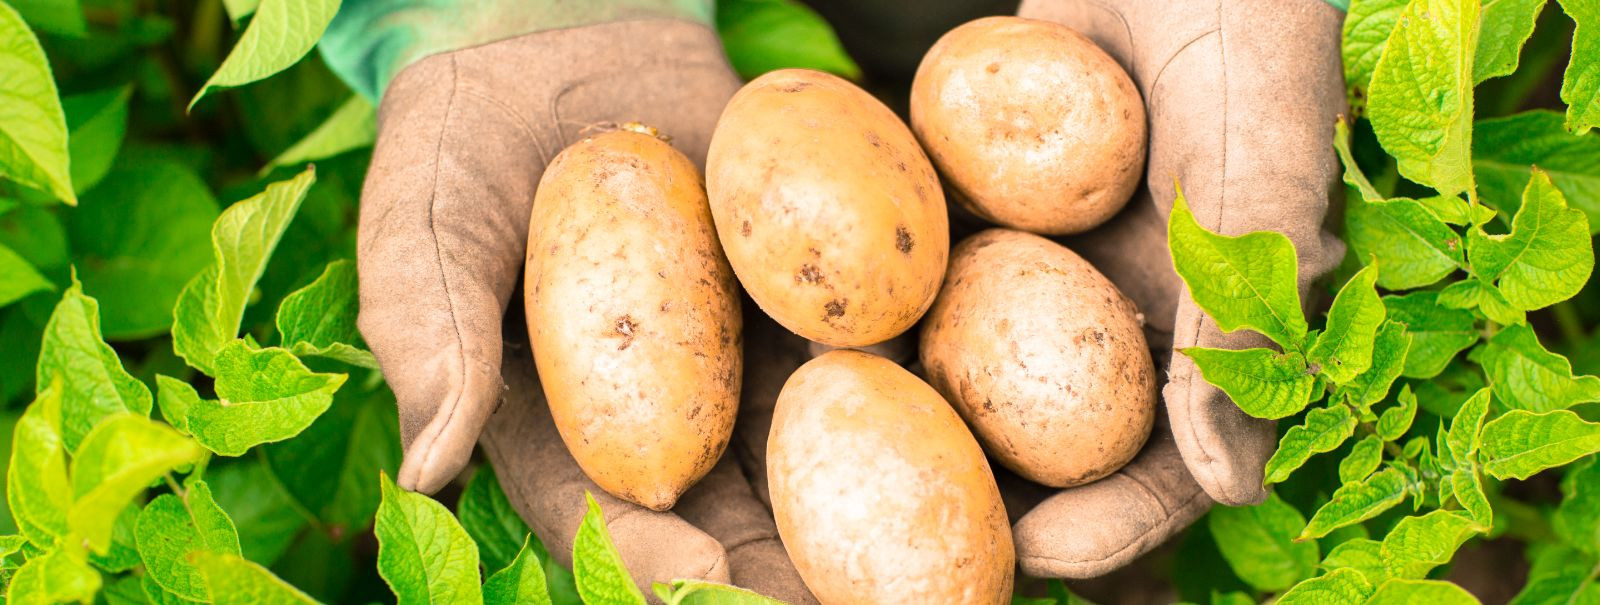 Seemnekartulid ei ole lihtsalt suvalised kartulid, vaid need on ...